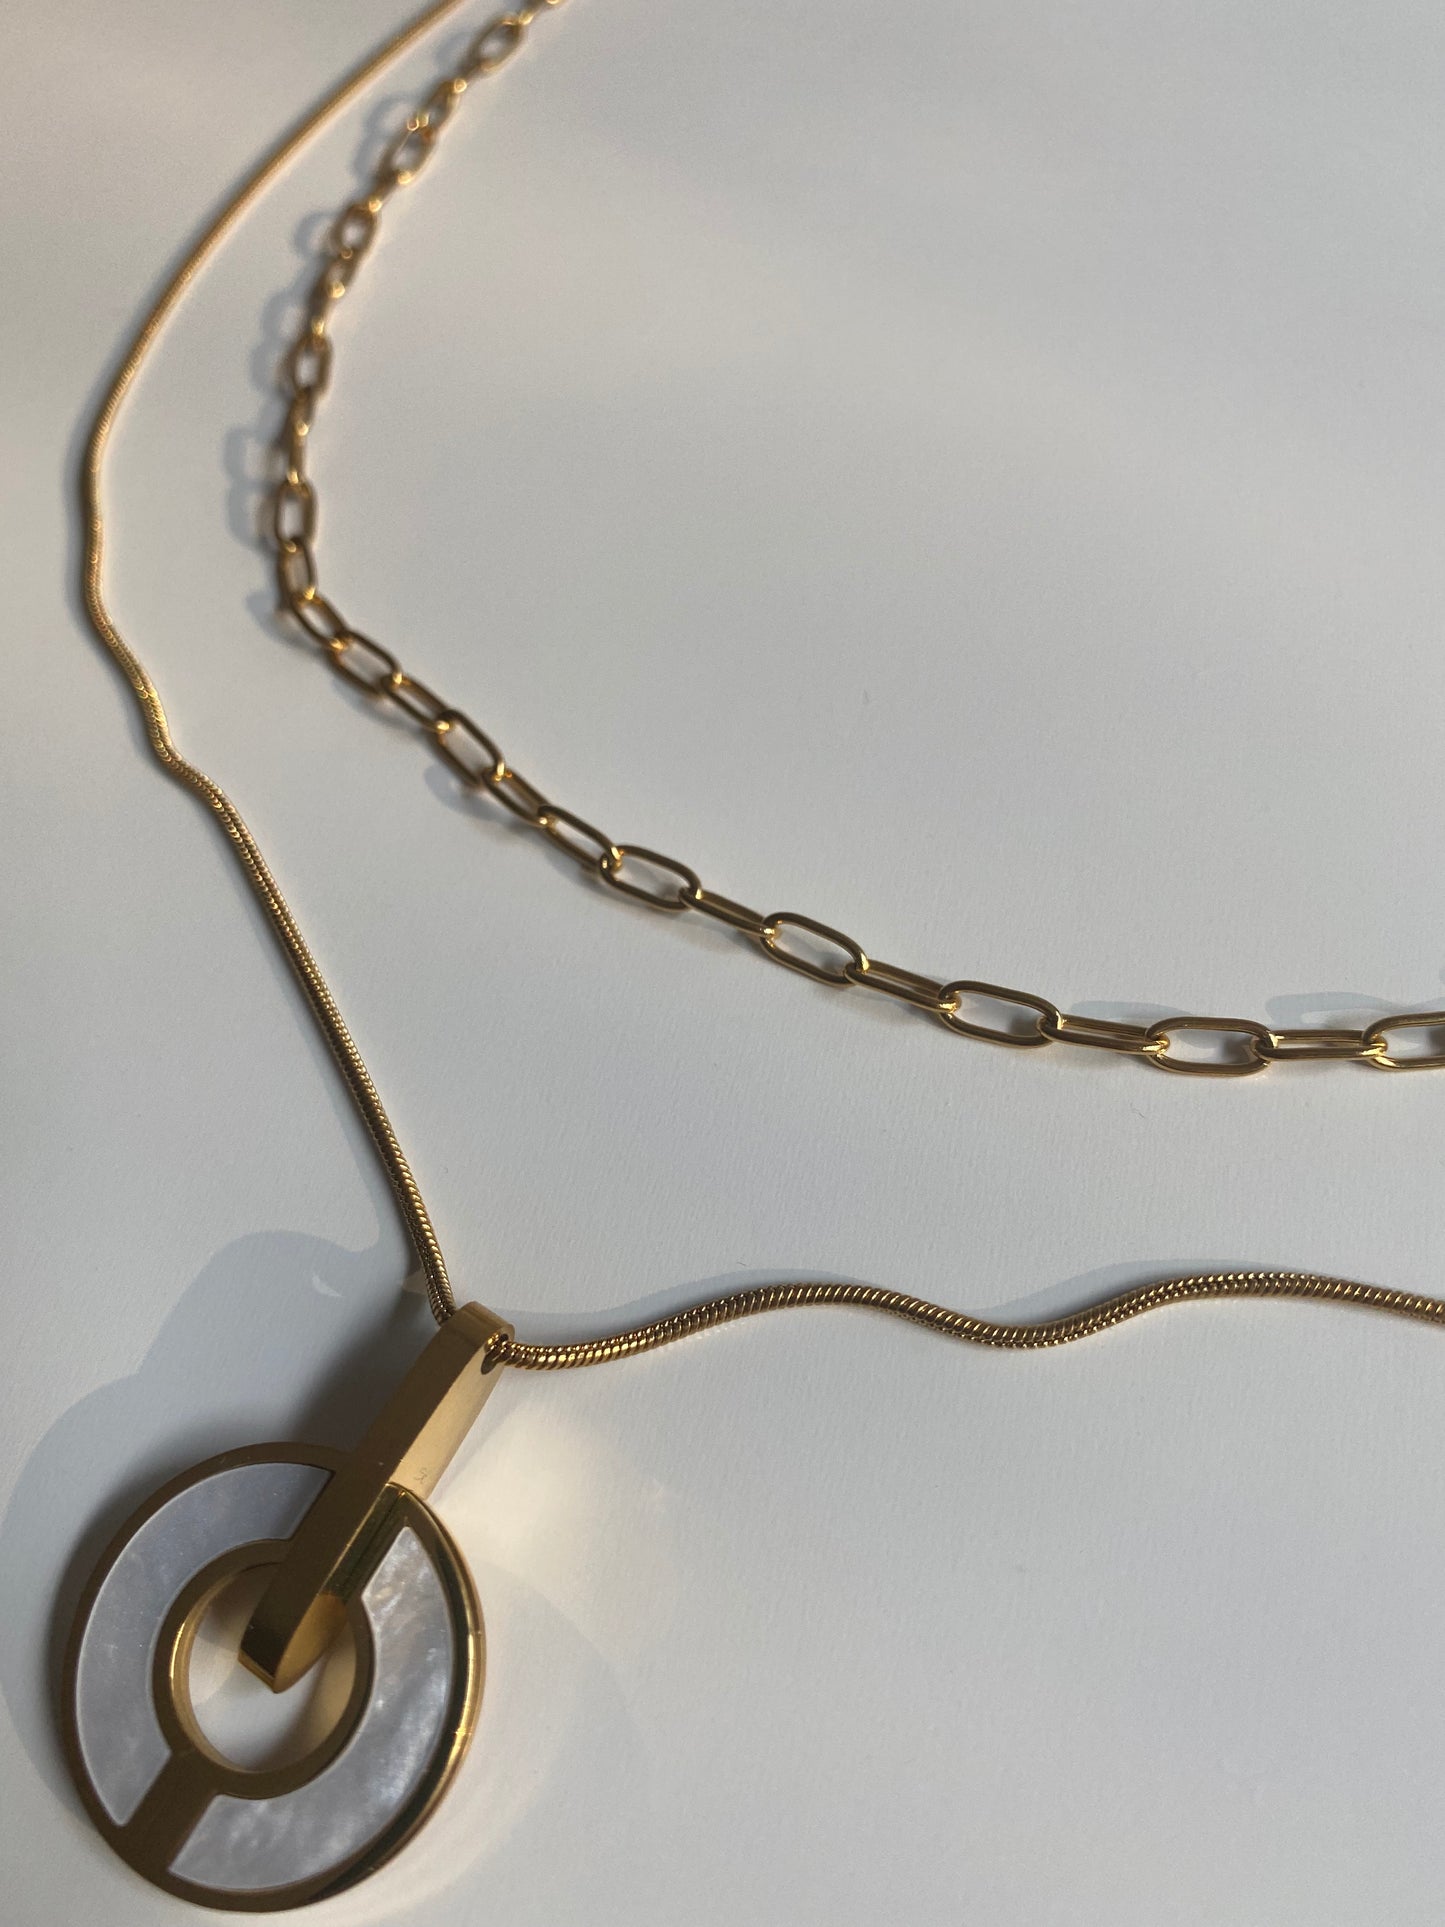 Exquisite Pendant Necklace